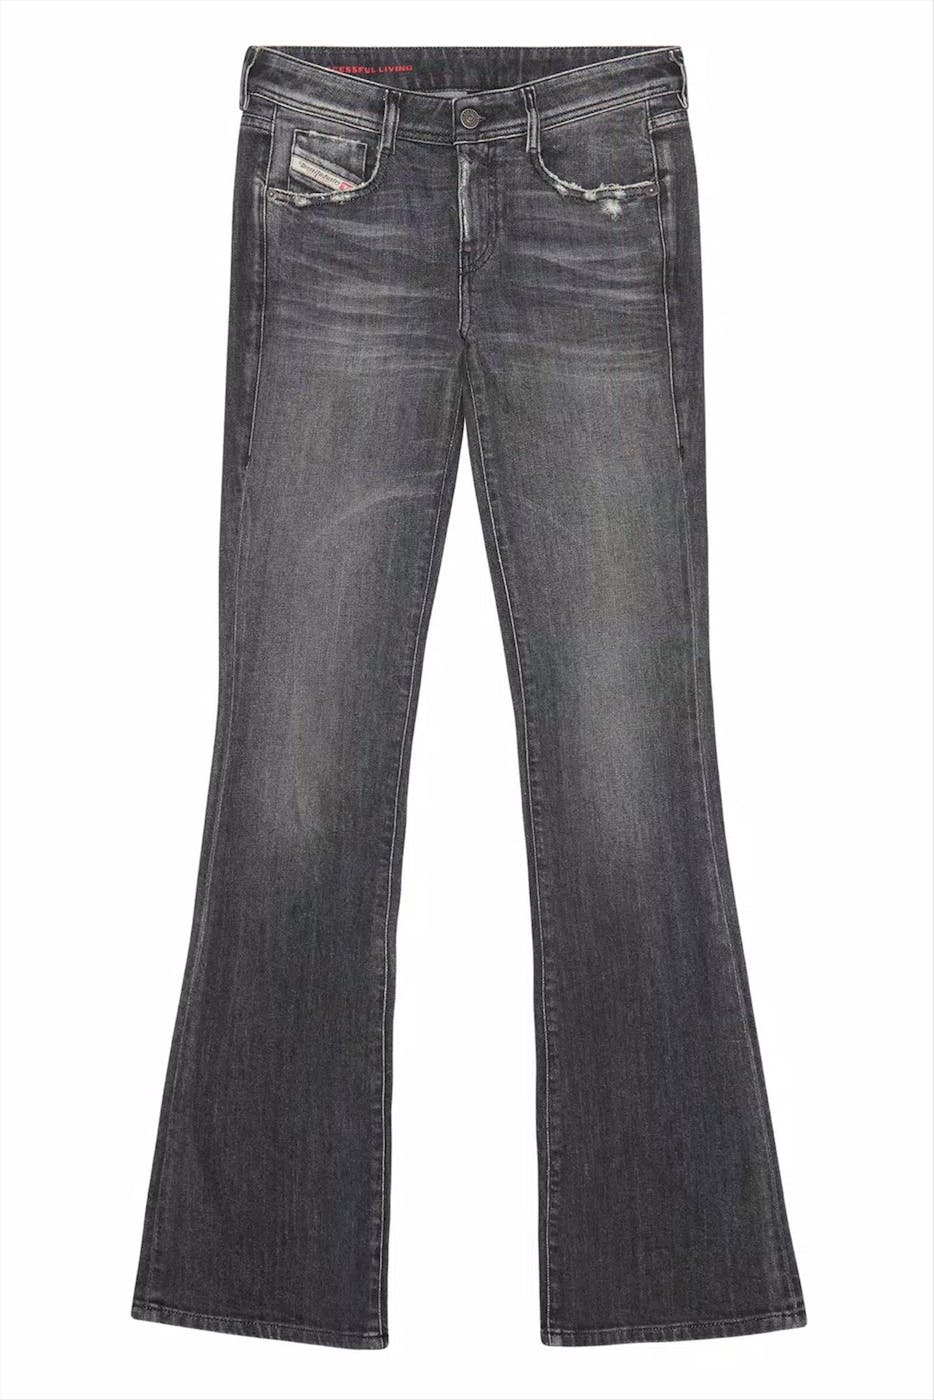 Diesel - Donkergrijze 1969 D-Ebbey Slim jeans